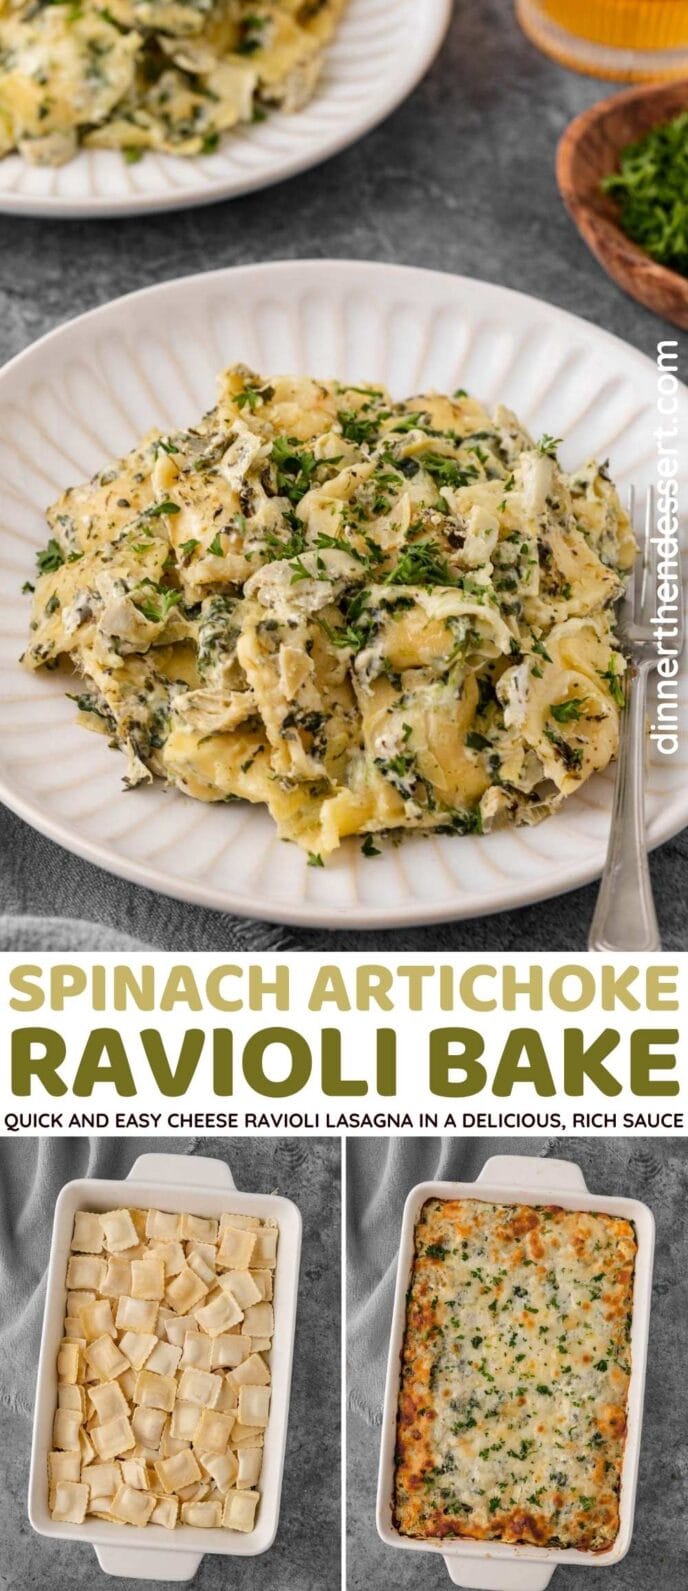 Spinach Artichoke Ravioli Bake collage